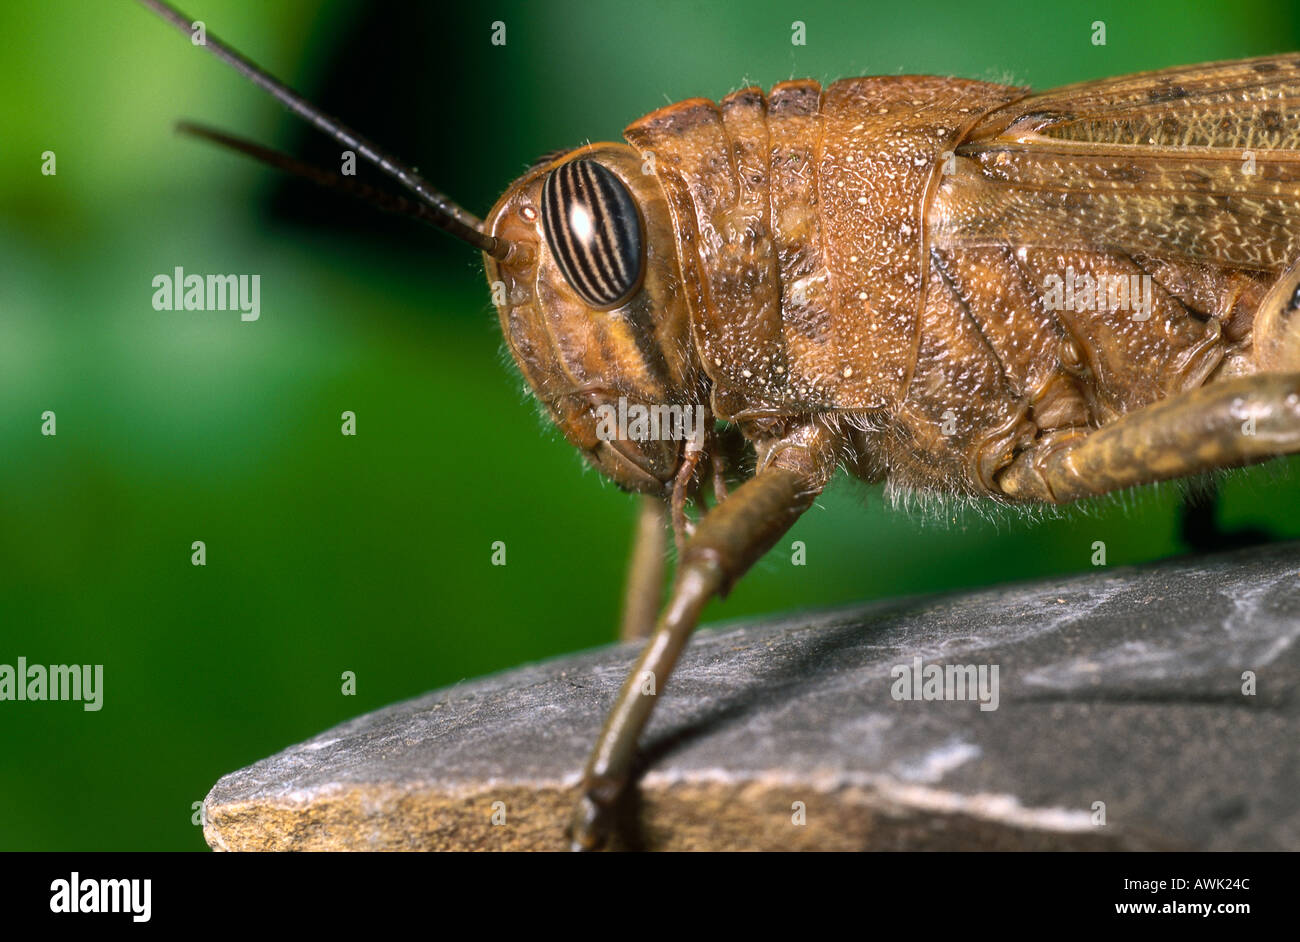 Close-up of Migratory locust (Locusta migratoria) on stone Stock Photo